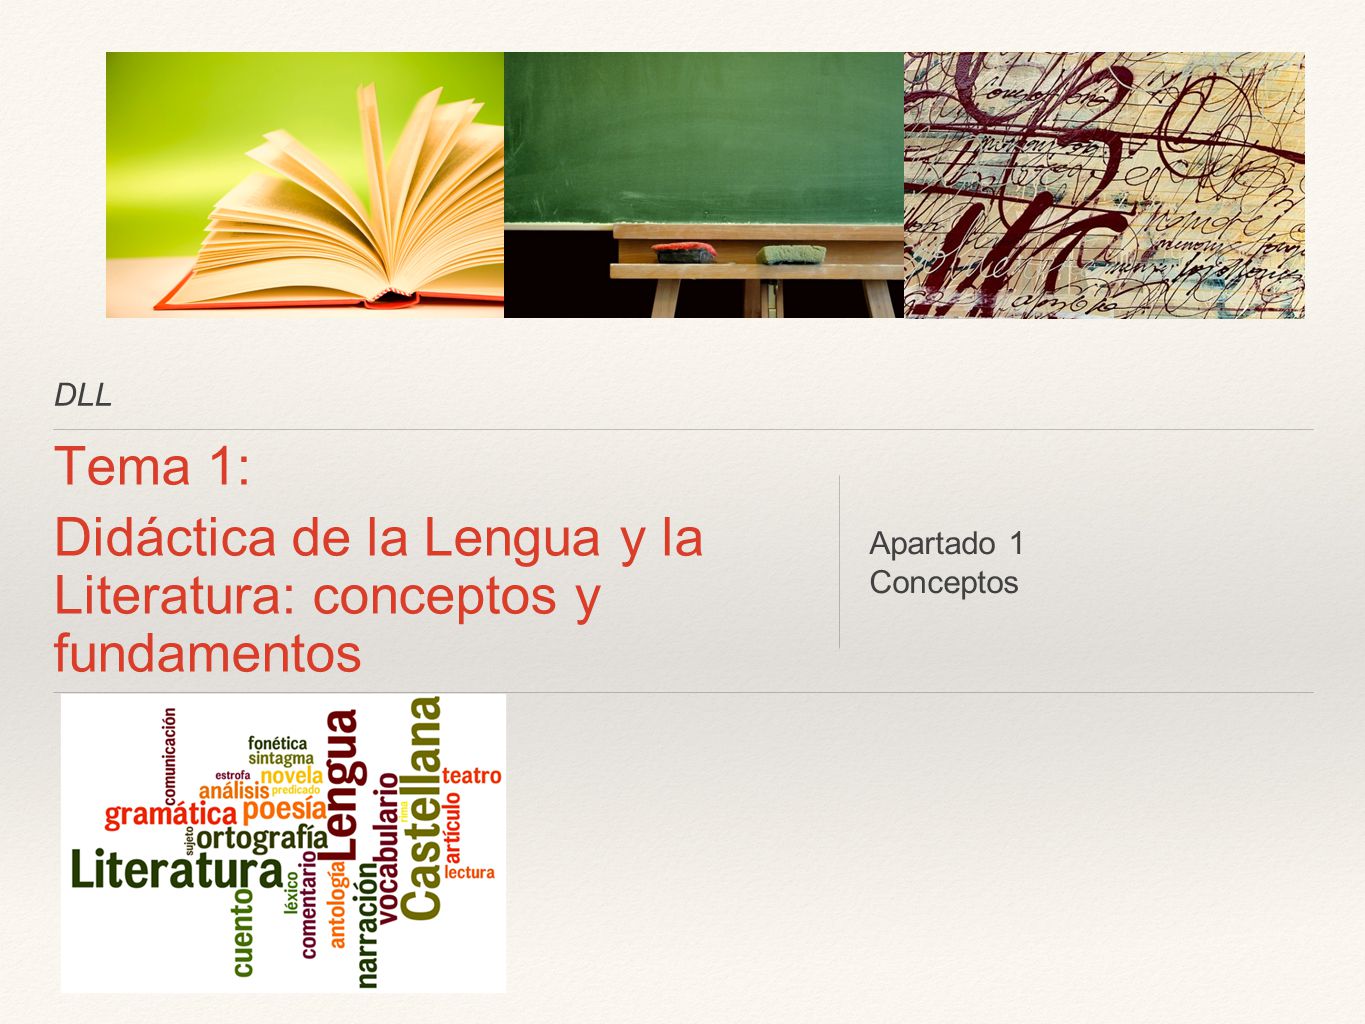 Didáctica de la Lengua y la Literatura: conceptos y fundamentos